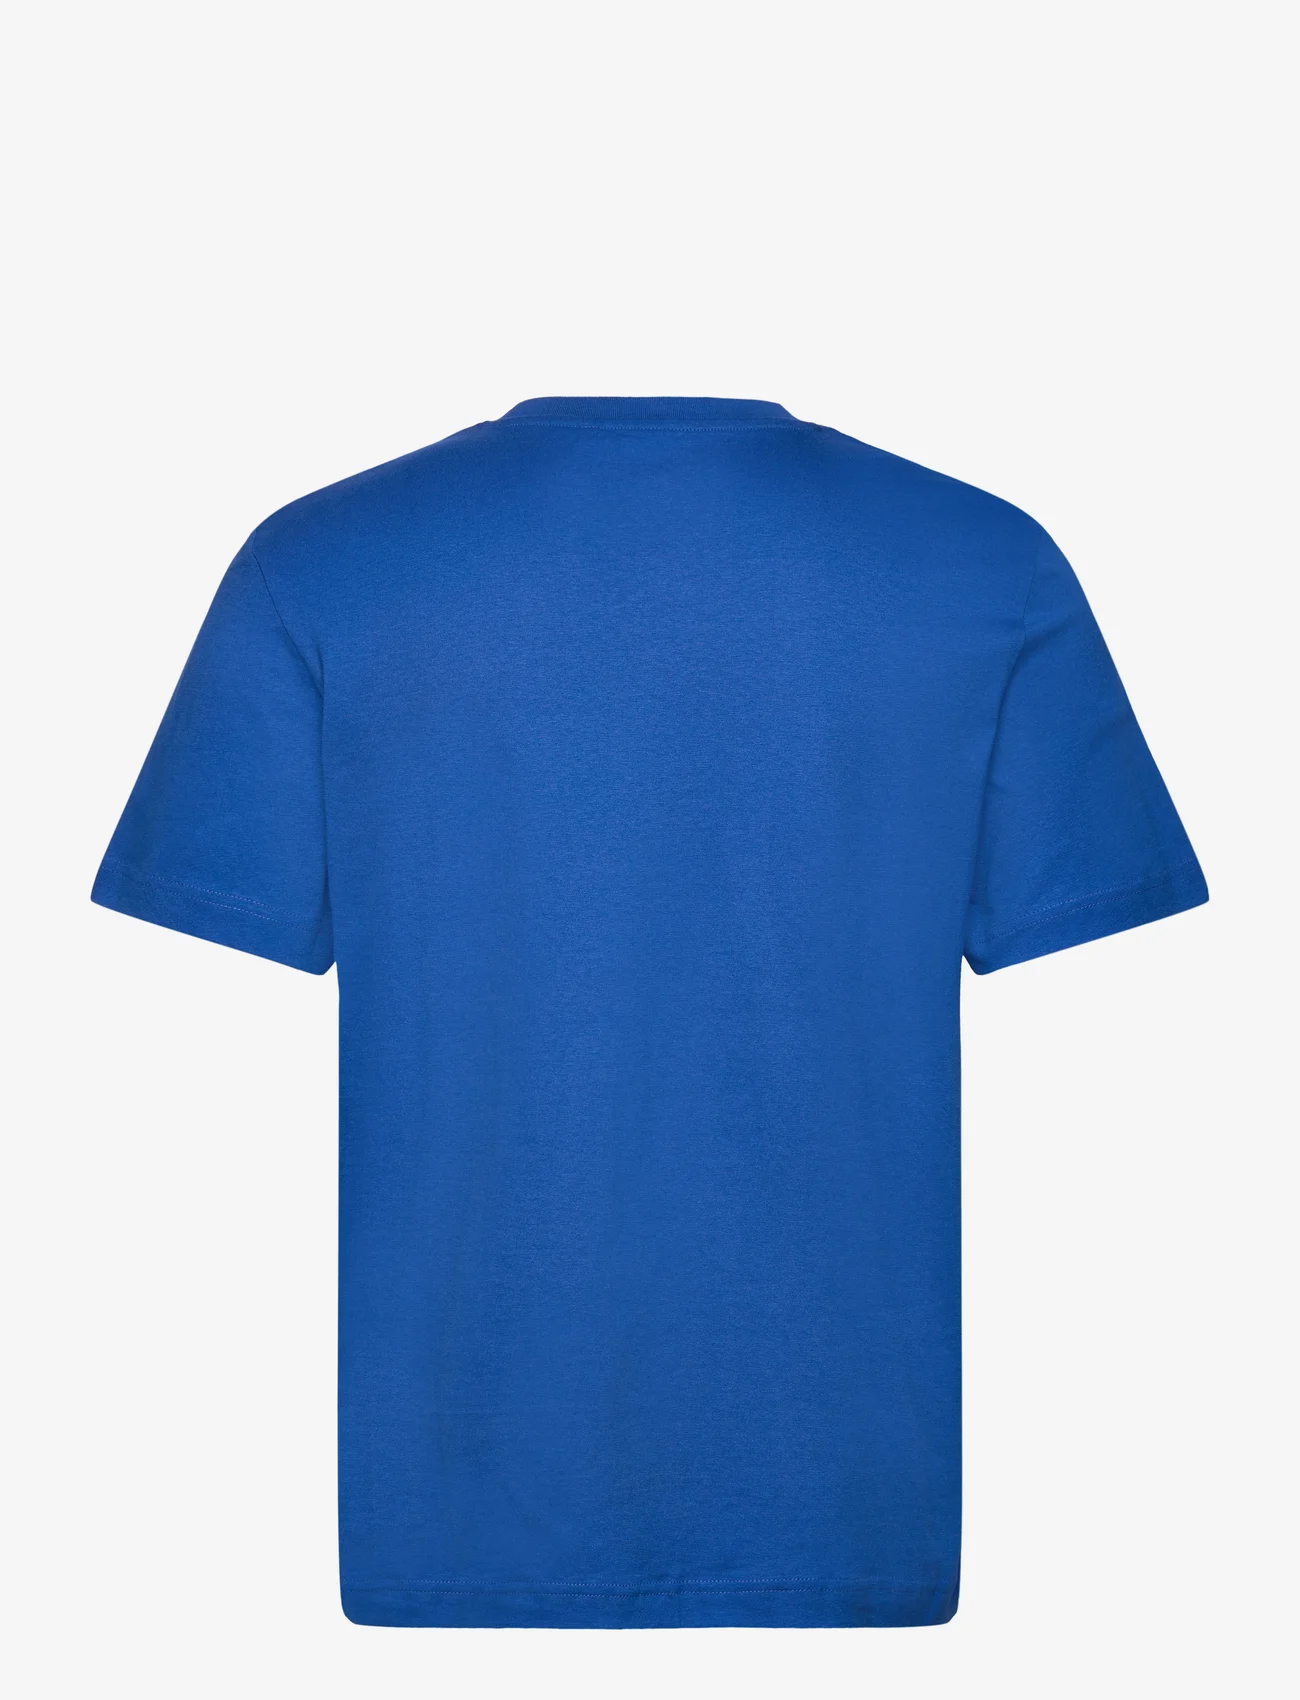 Tom Tailor - photoprint t-shirt - die niedrigsten preise - sure blue - 1